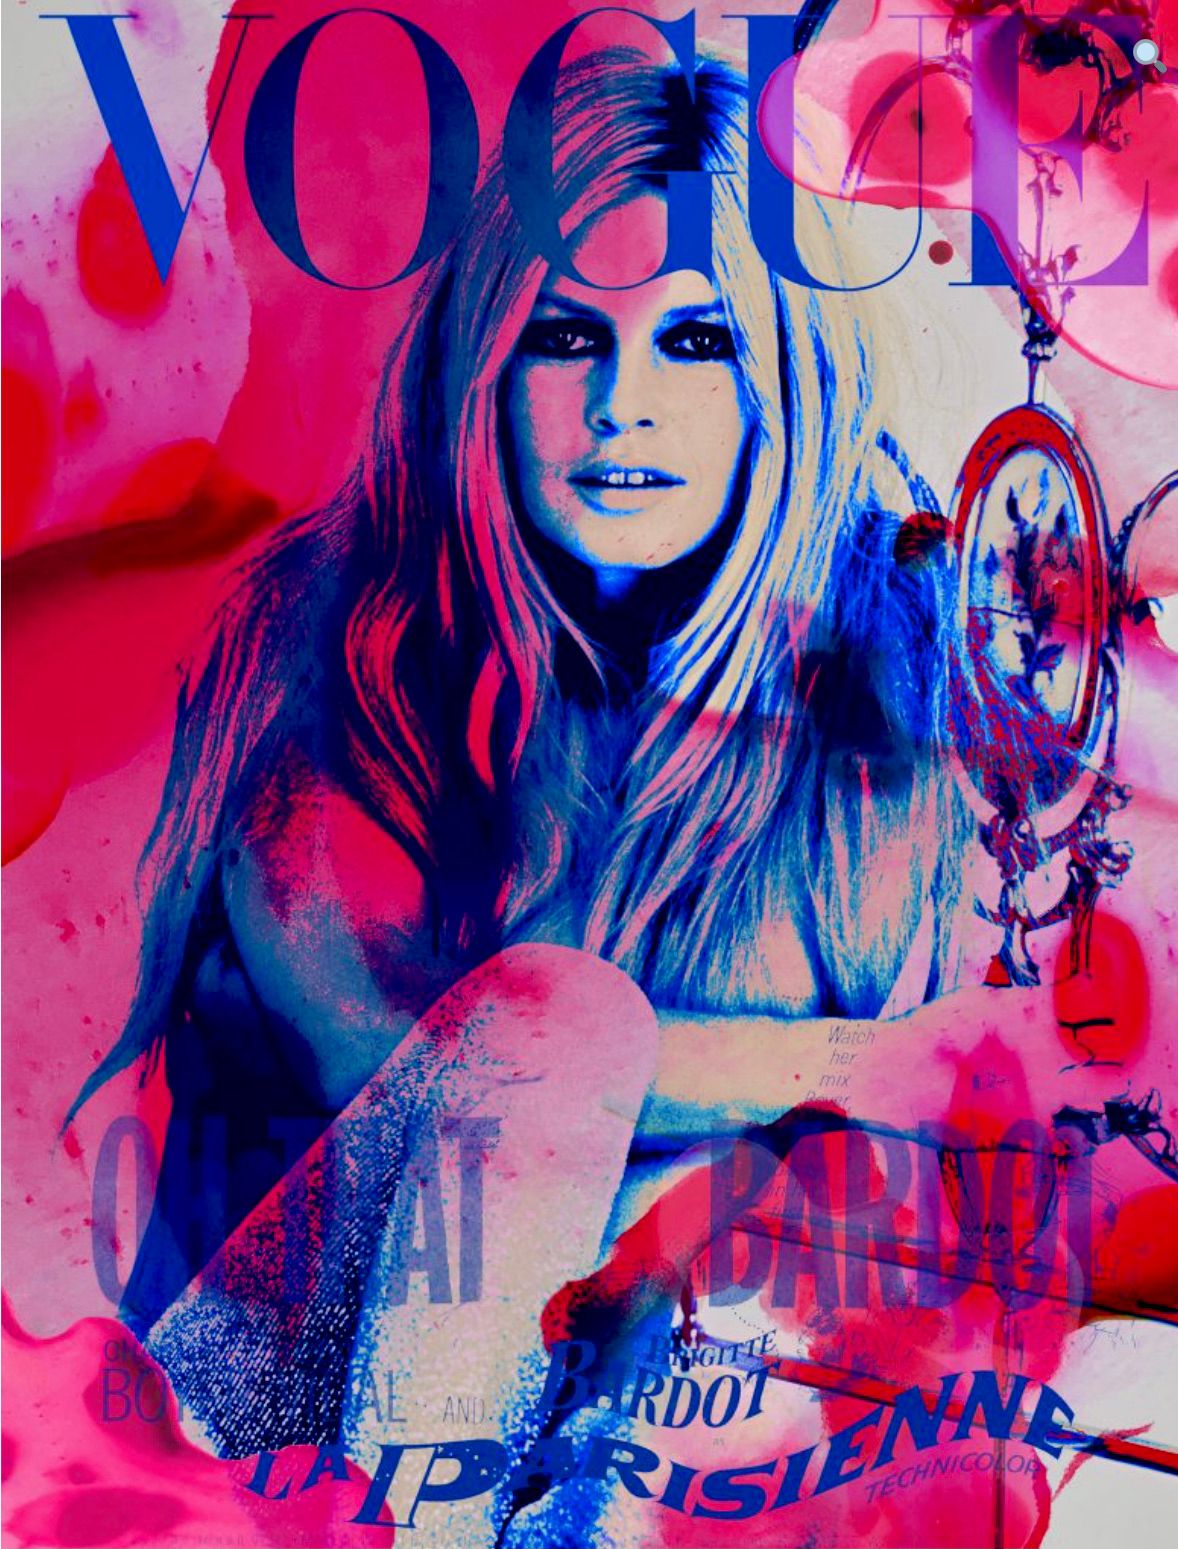 Nathali von Kretschmann Collage Painting Vogue Cover Brigitte Bardot